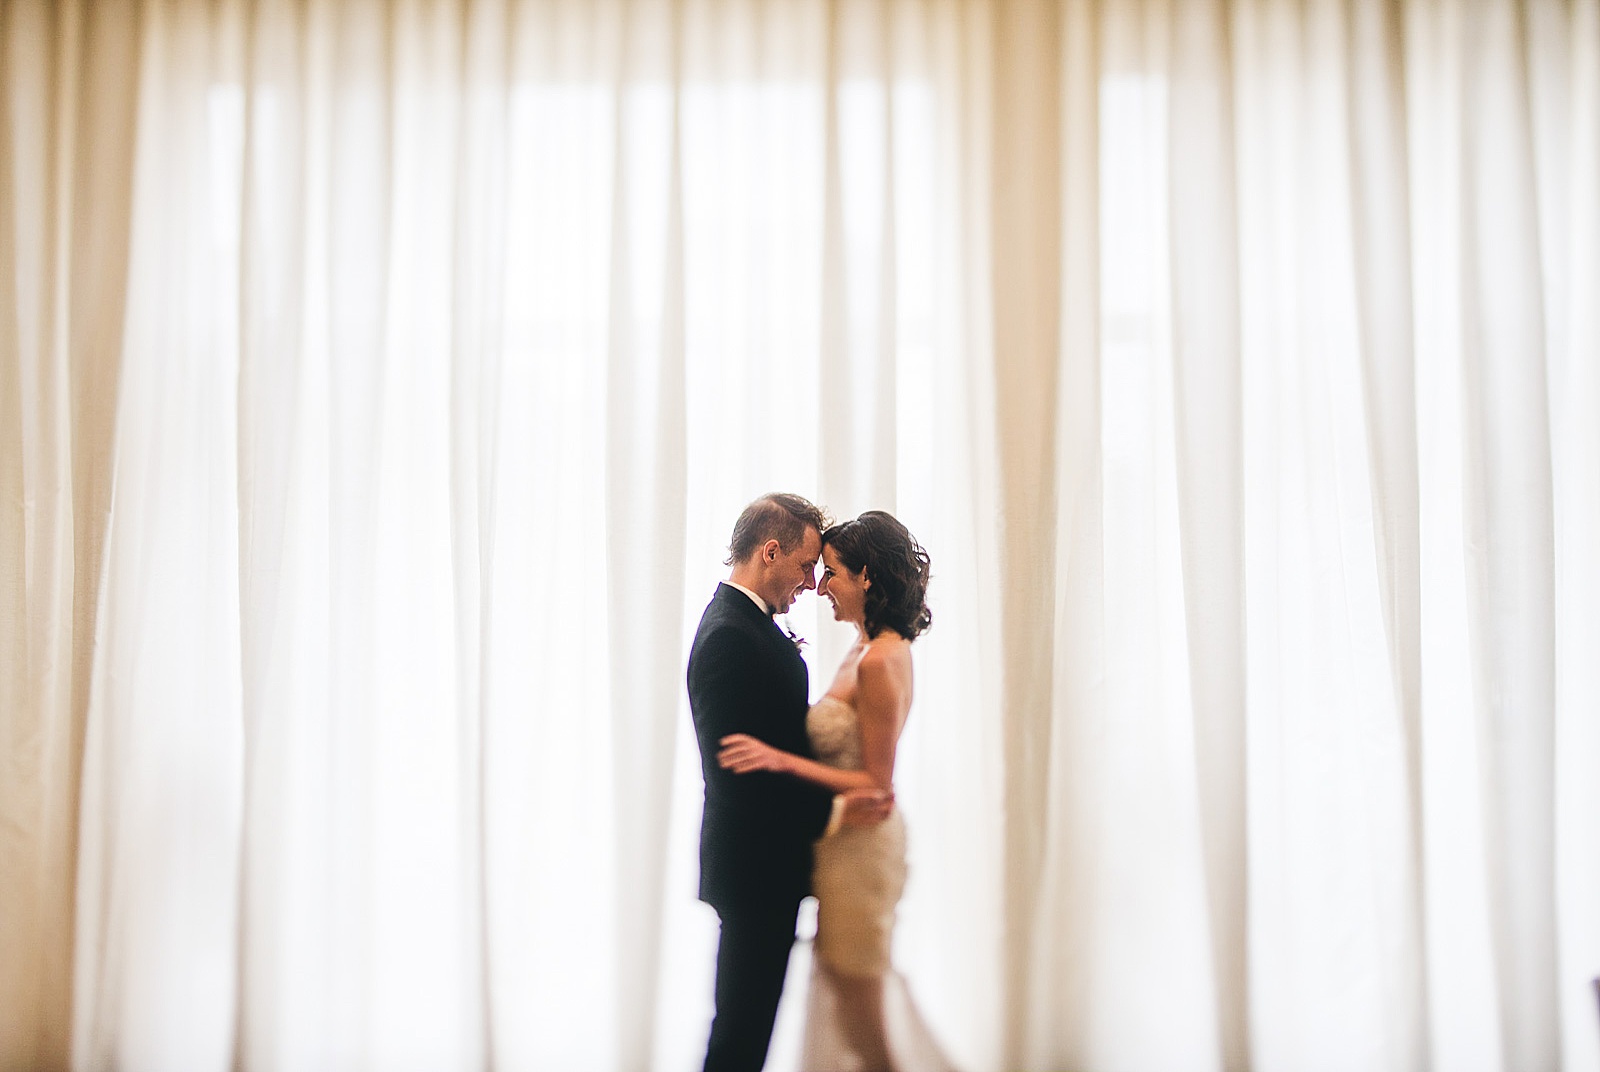 17 chicago wedding photography - Chicago Illuminating Company Wedding // Samantha + Jeremy